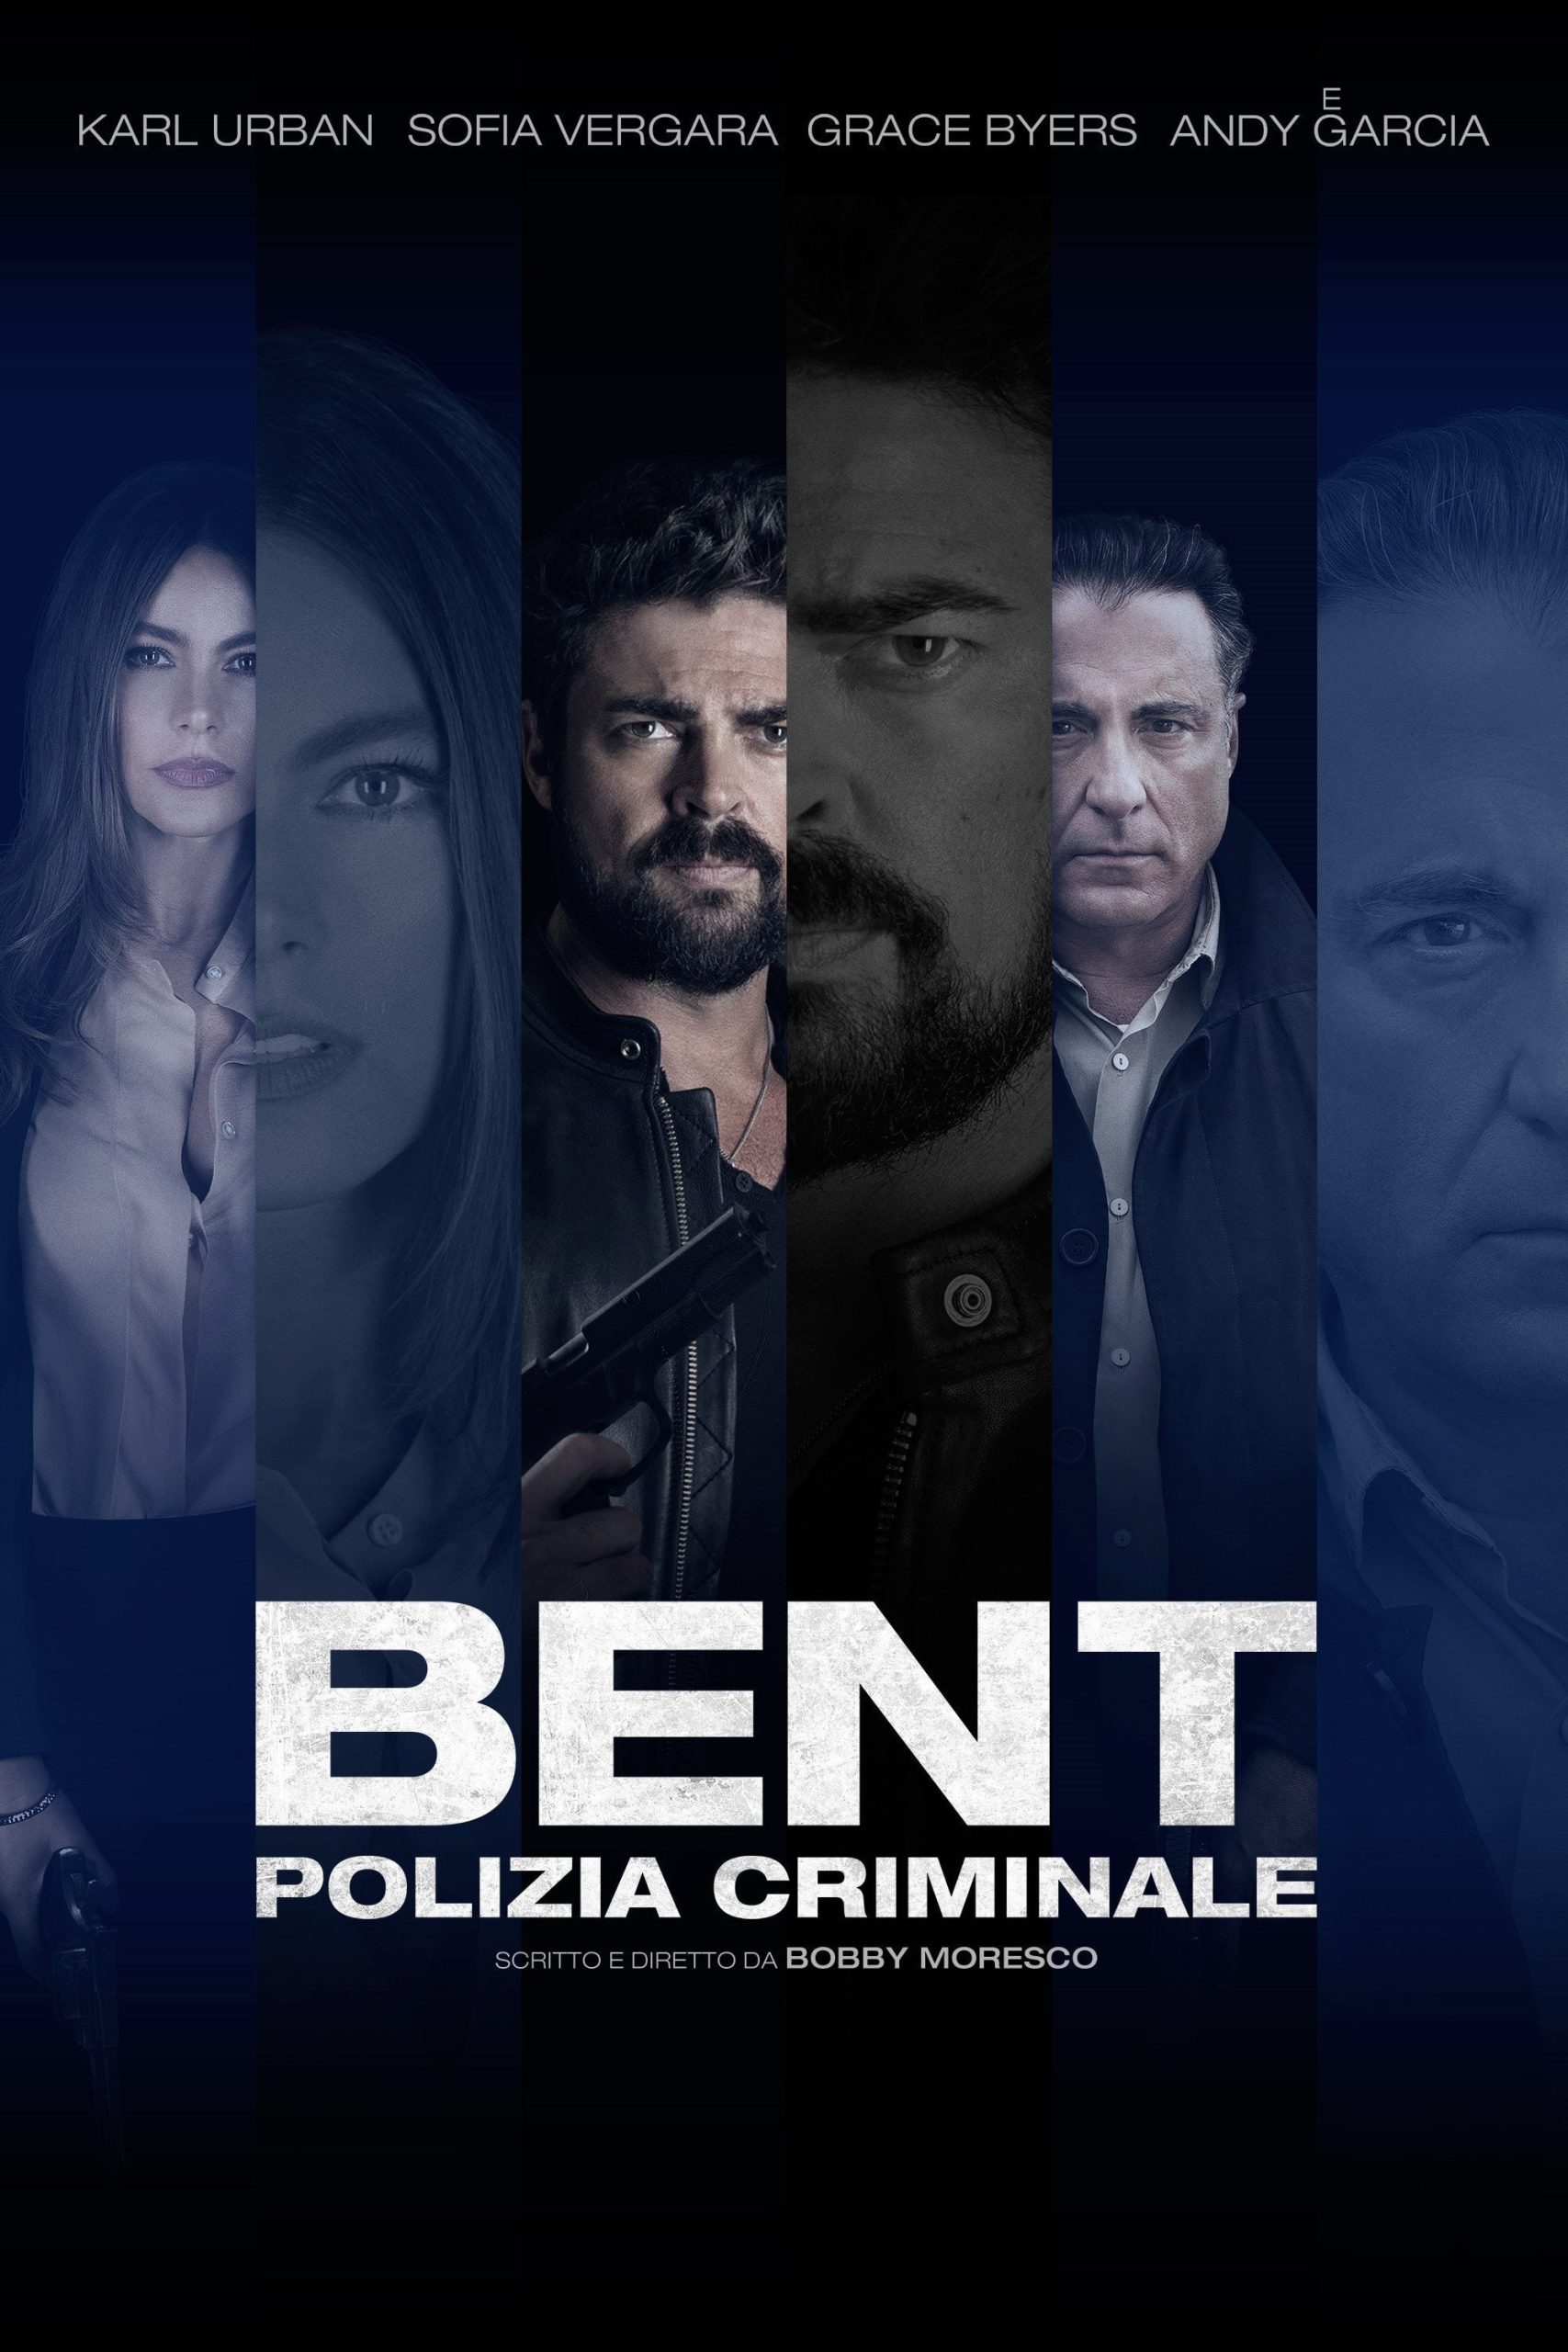 Bent – Polizia criminale [HD] (2018)